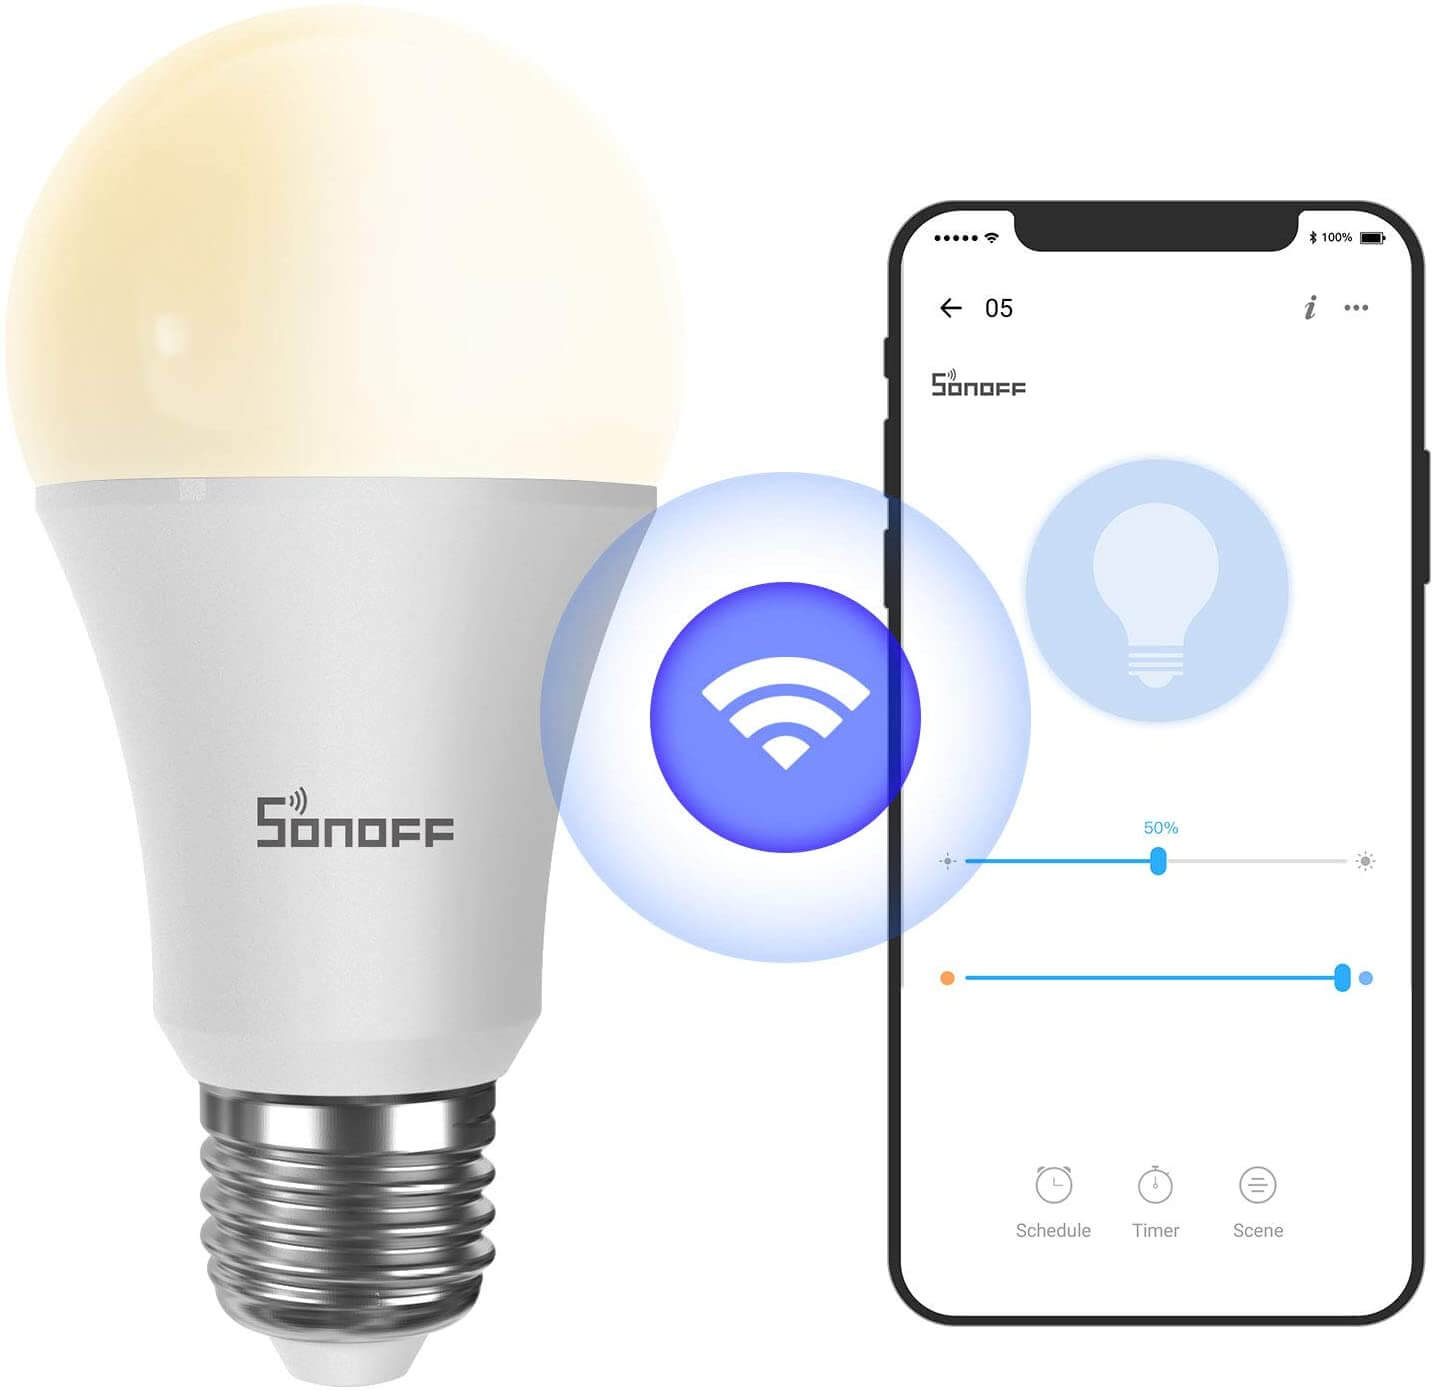 Sonoff B02-F-A60 - Ampoule connectée WiFi E27 blanc réglable à filaments  LED - Compatible eWelink, Google Home,  Alexa